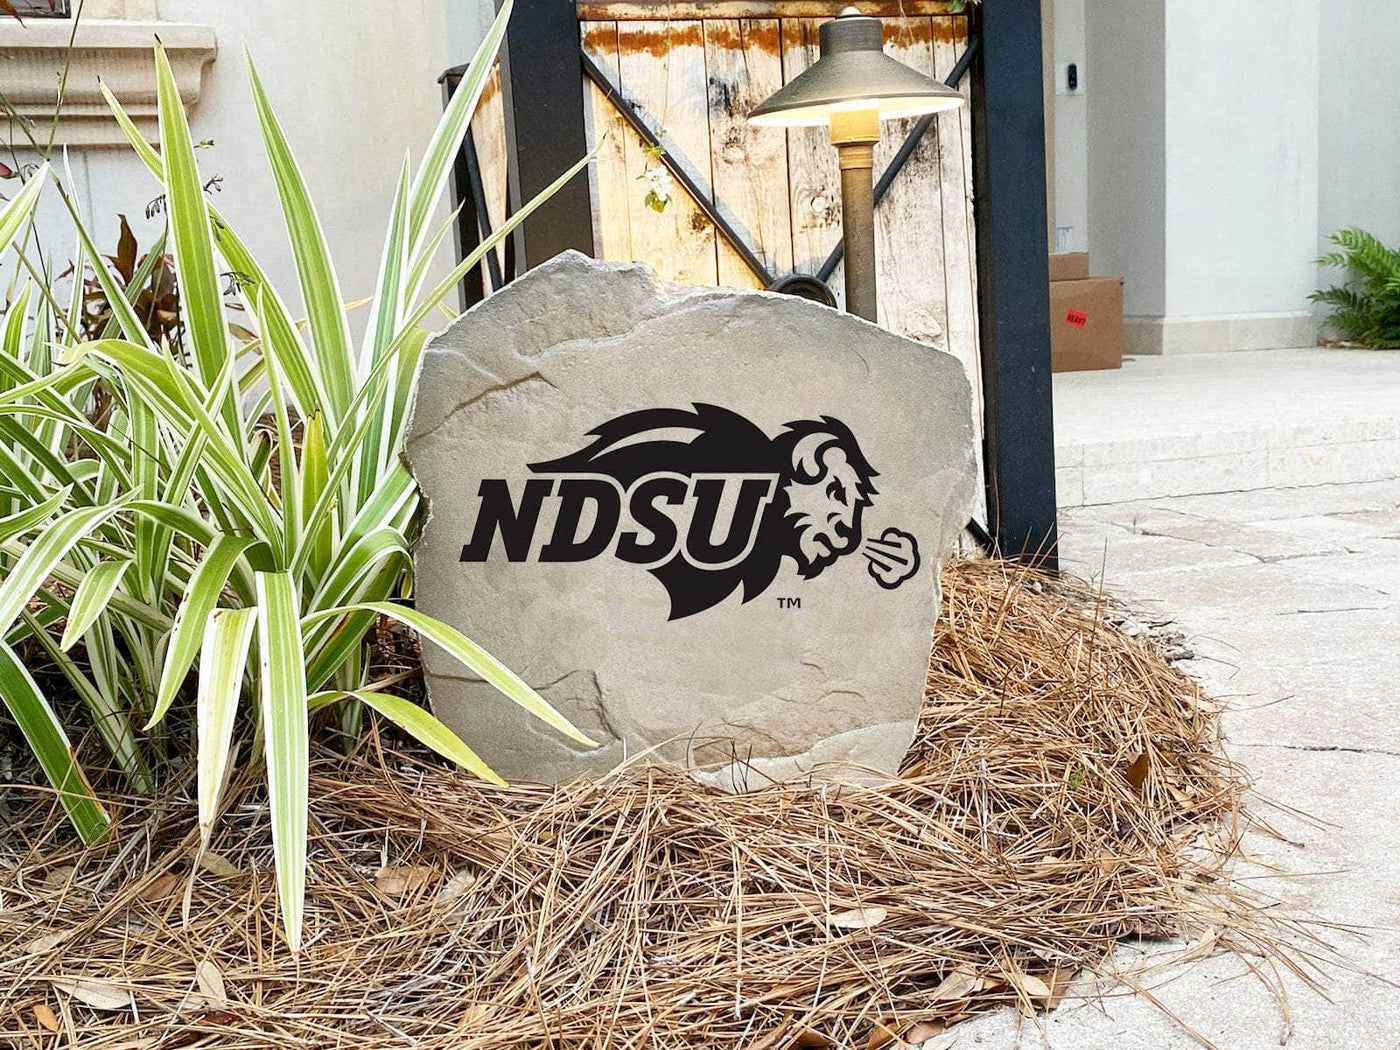 North Dakota State University Logo Stone